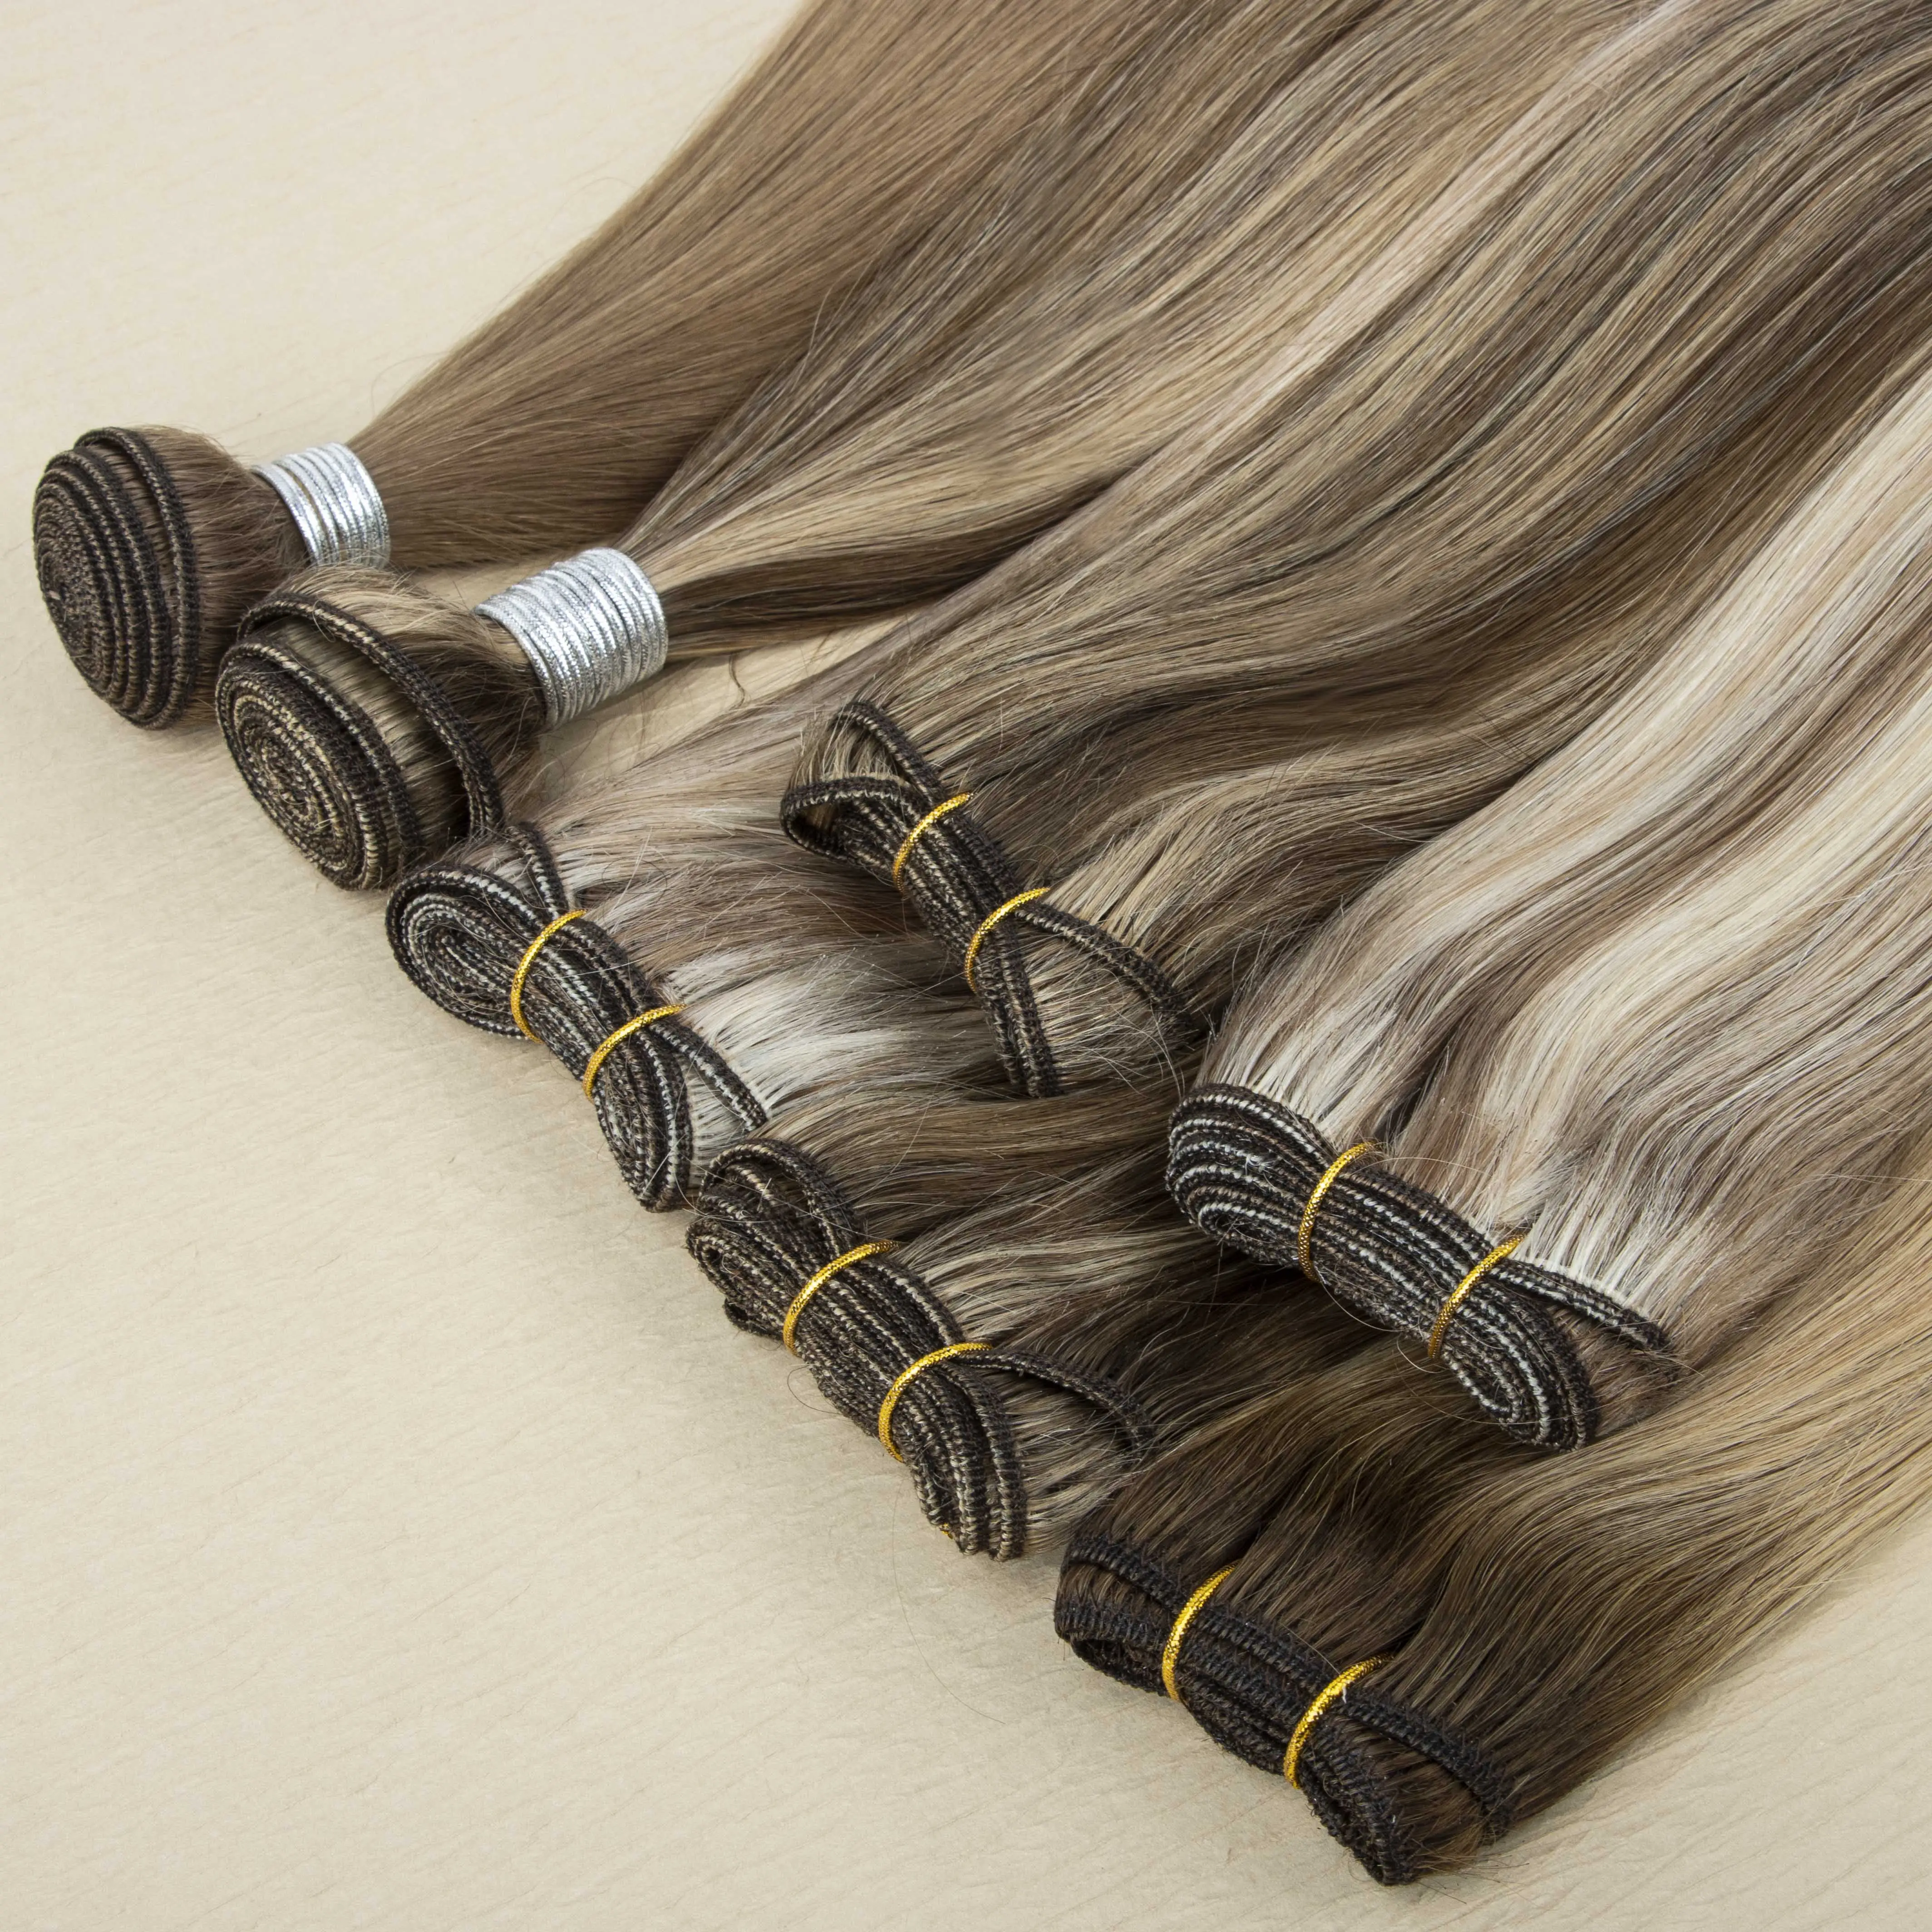 Vendeur de trame de cheveux humains alignés avec cuticules brutes droites 12A Cheveux ondulés vierges de vison doublement étirés